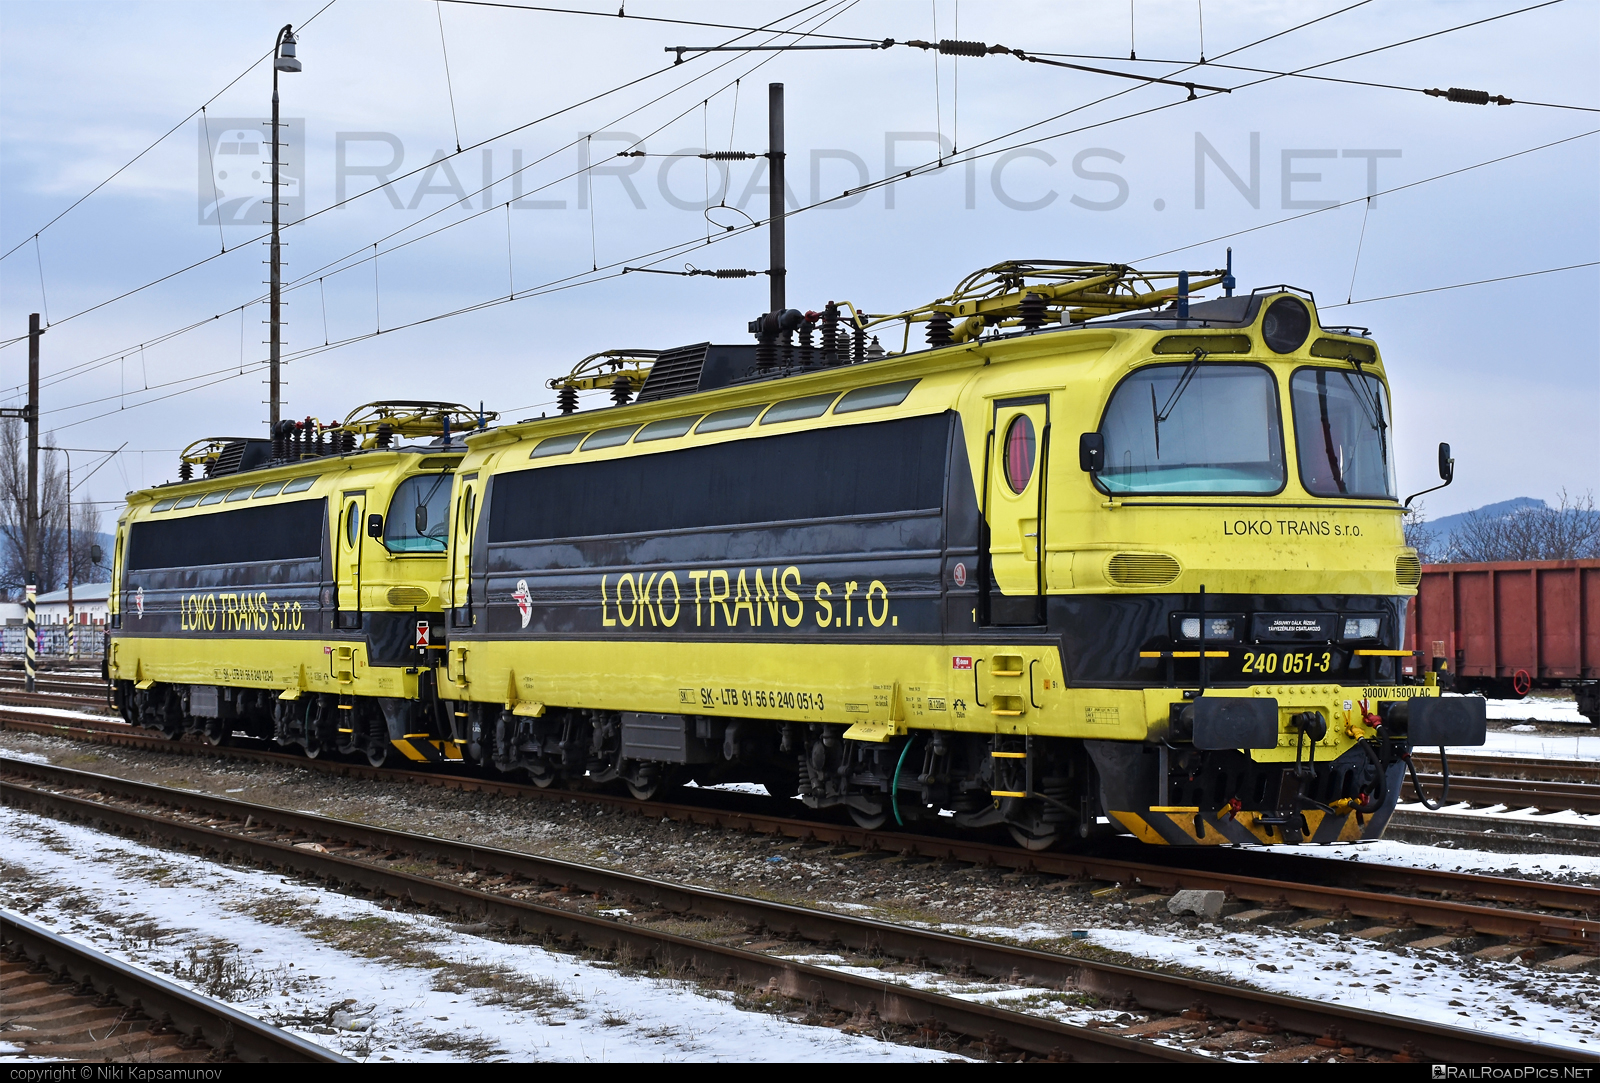 Škoda 47E - 240 051-3 operated by LOKO TRANS s.r.o. #laminatka #locomotive240 #lokotrans #skoda #skoda47e